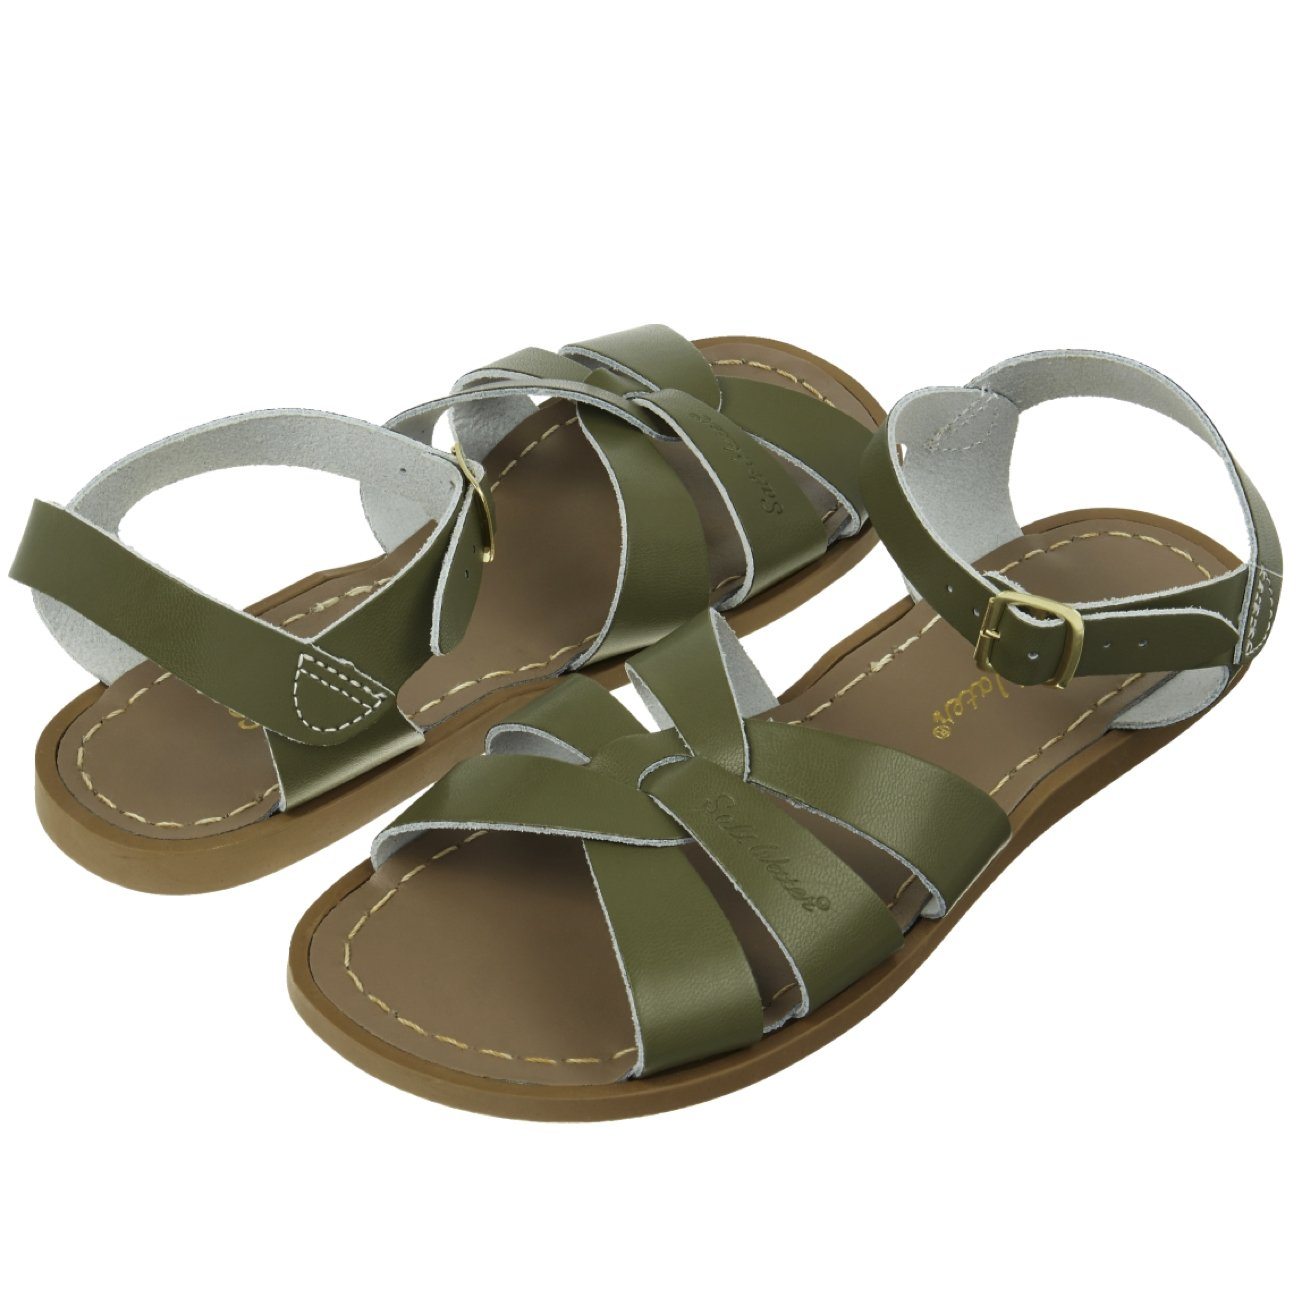 Salt Water Sandals, Original, Youth, Olive Sandals Salt Water Sandals Olive Y1 